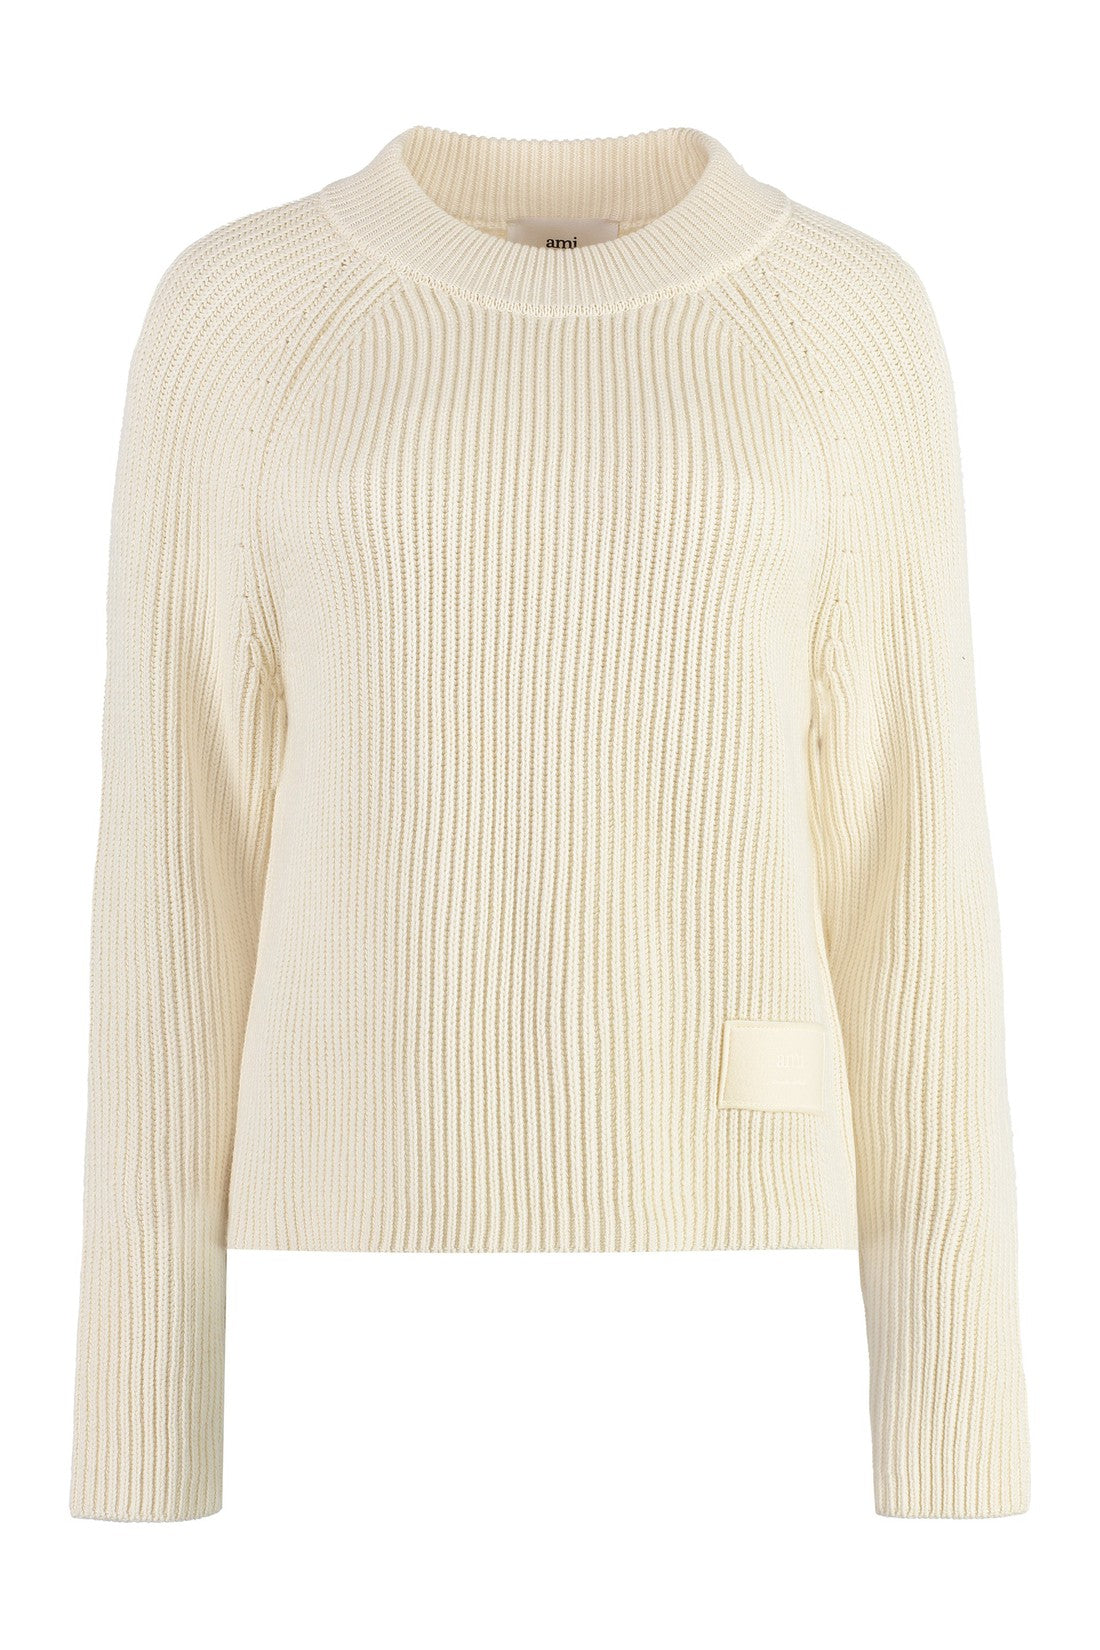 AMI PARIS-OUTLET-SALE-Cotton-blend sweater-ARCHIVIST